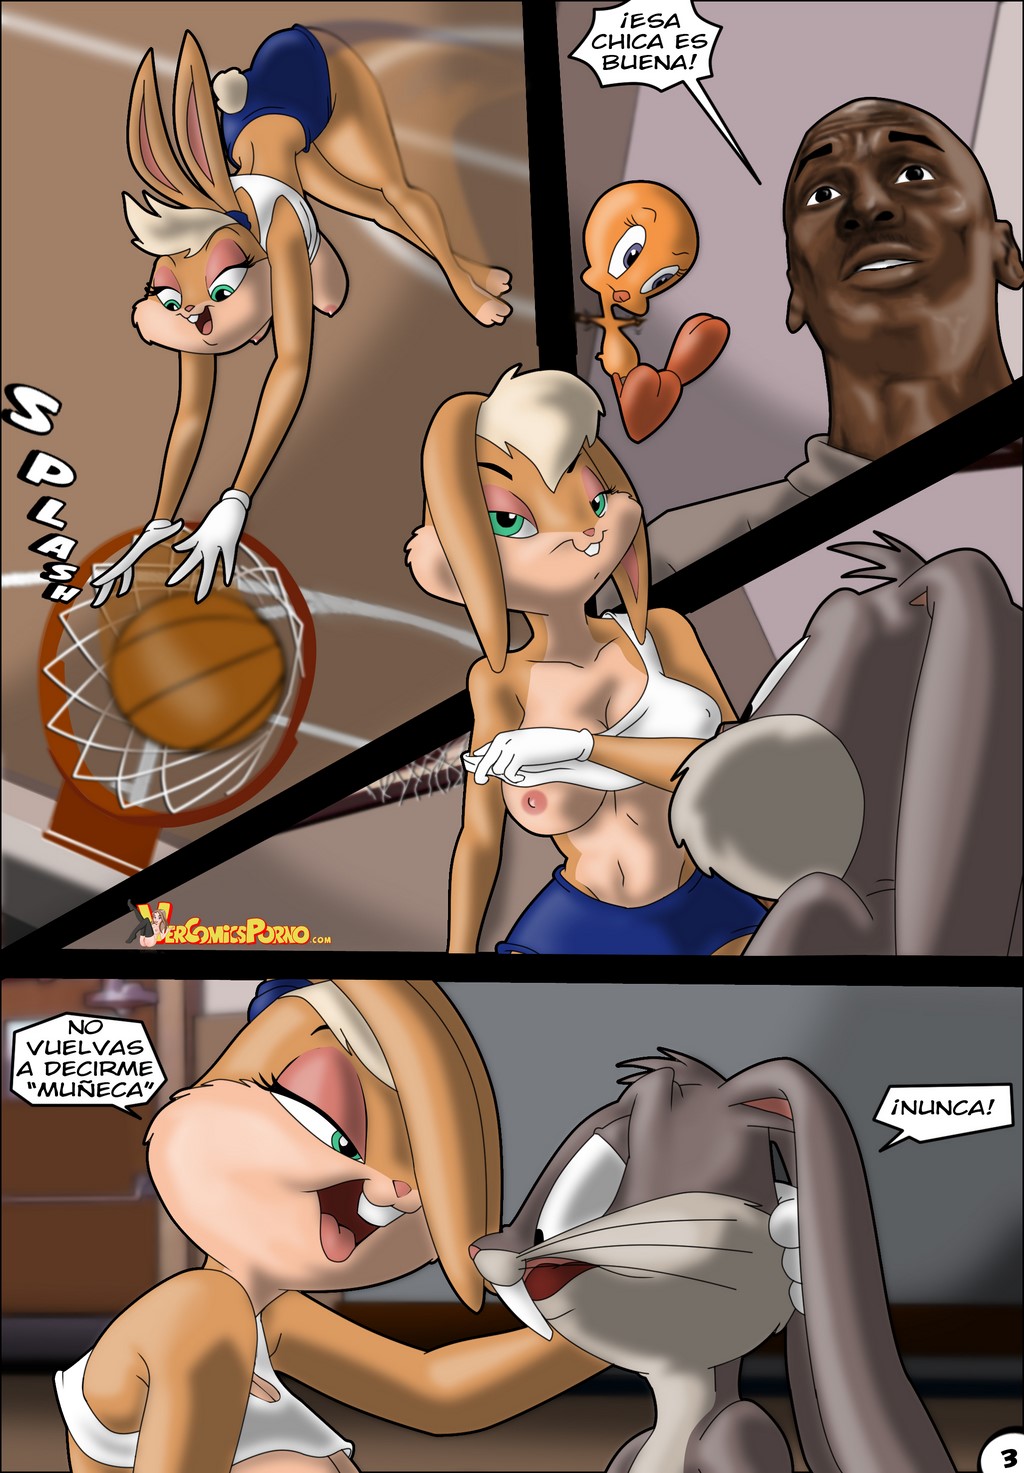 Read Drah Lola Bunny En Aprobar Para El Equipo Looney Tunes Spanish Hentai Porns Manga